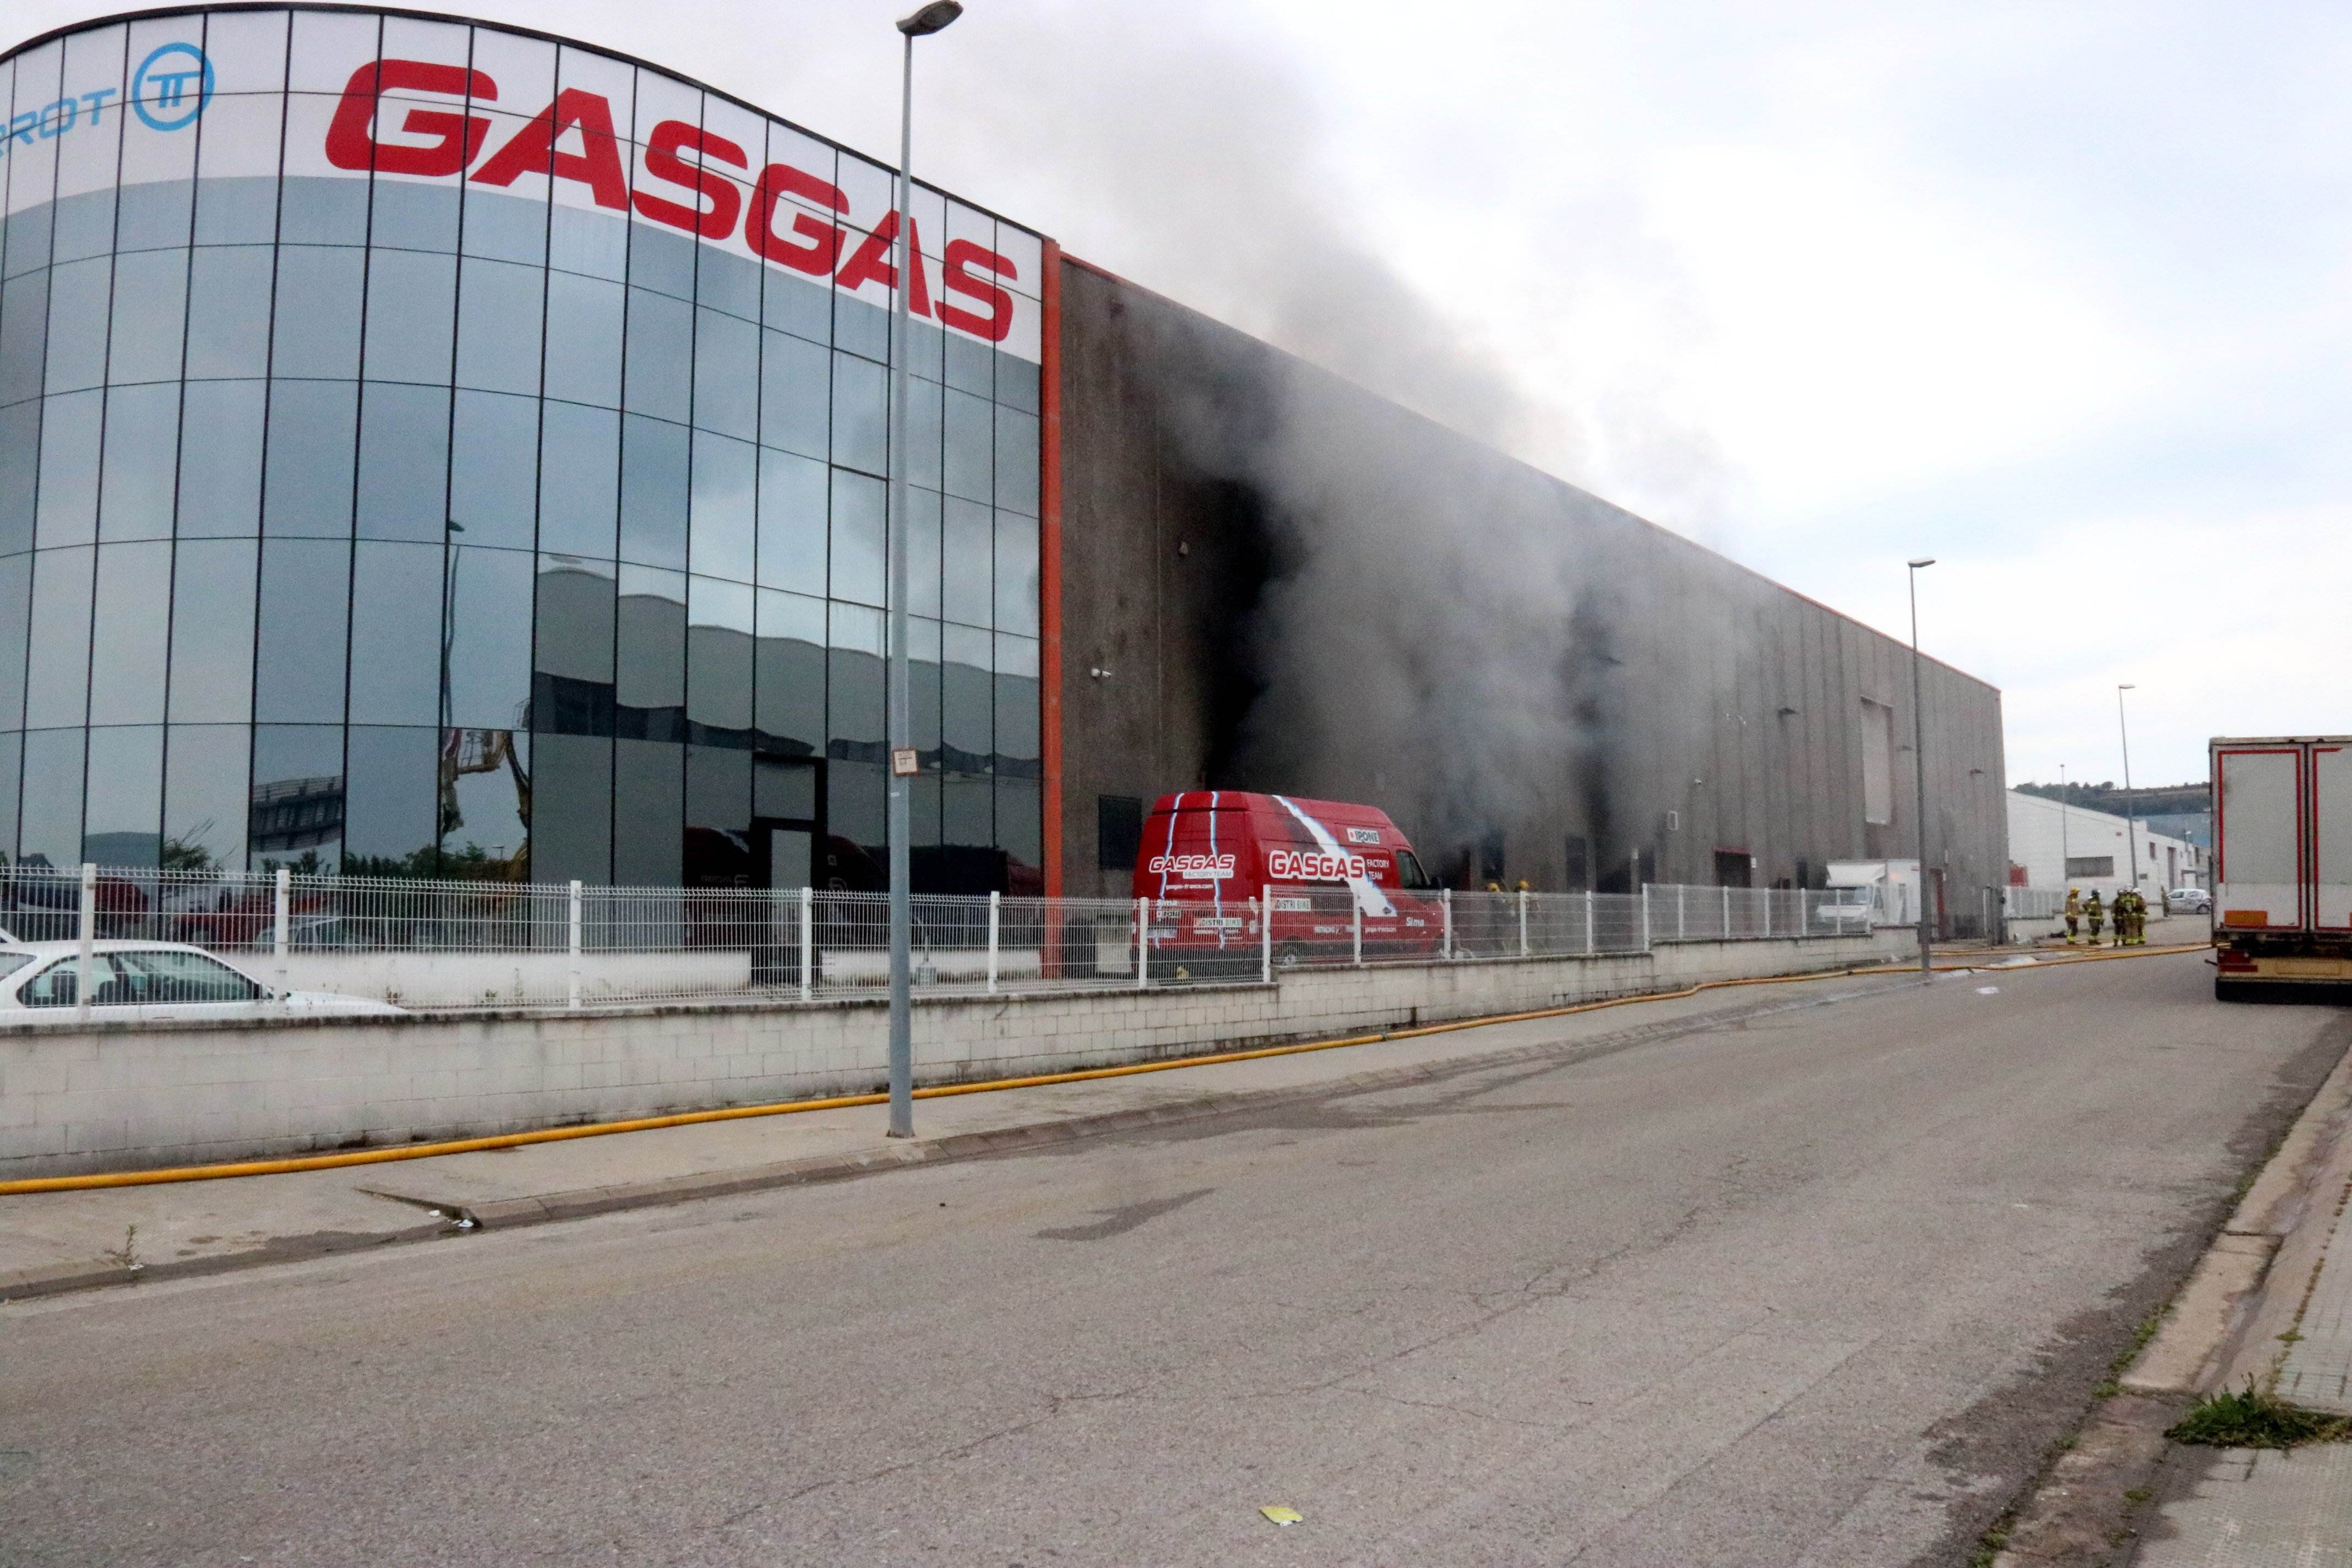 Un incendi crema la fàbrica Gas Gas de Salt sense provocar ferits